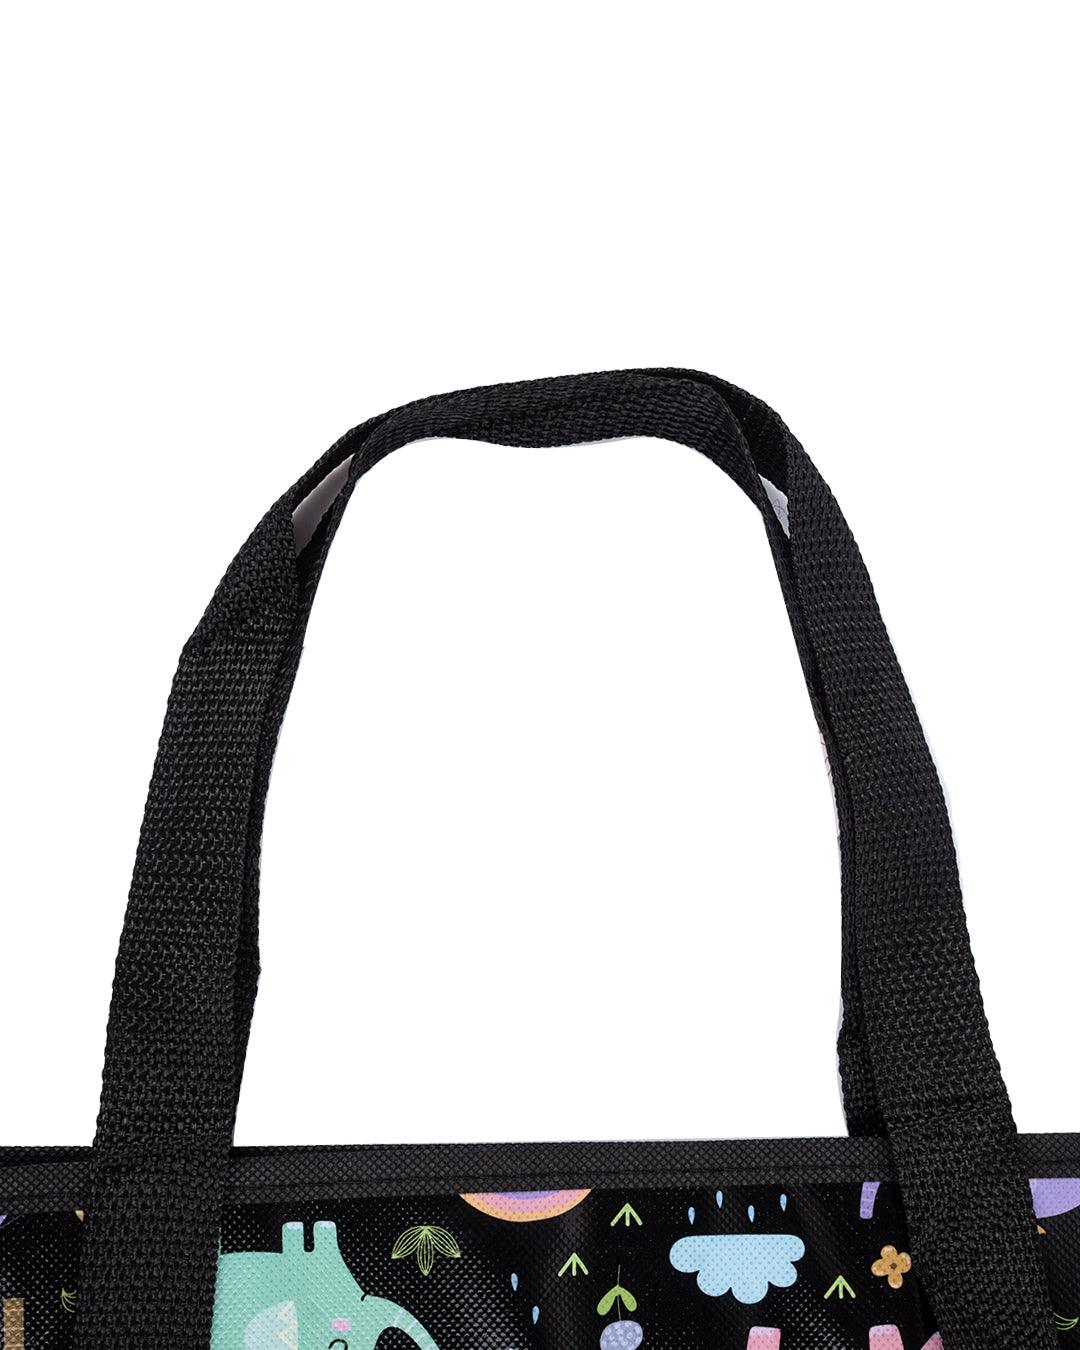 Donati Shopping Bag, Black, Plastic - MARKET 99